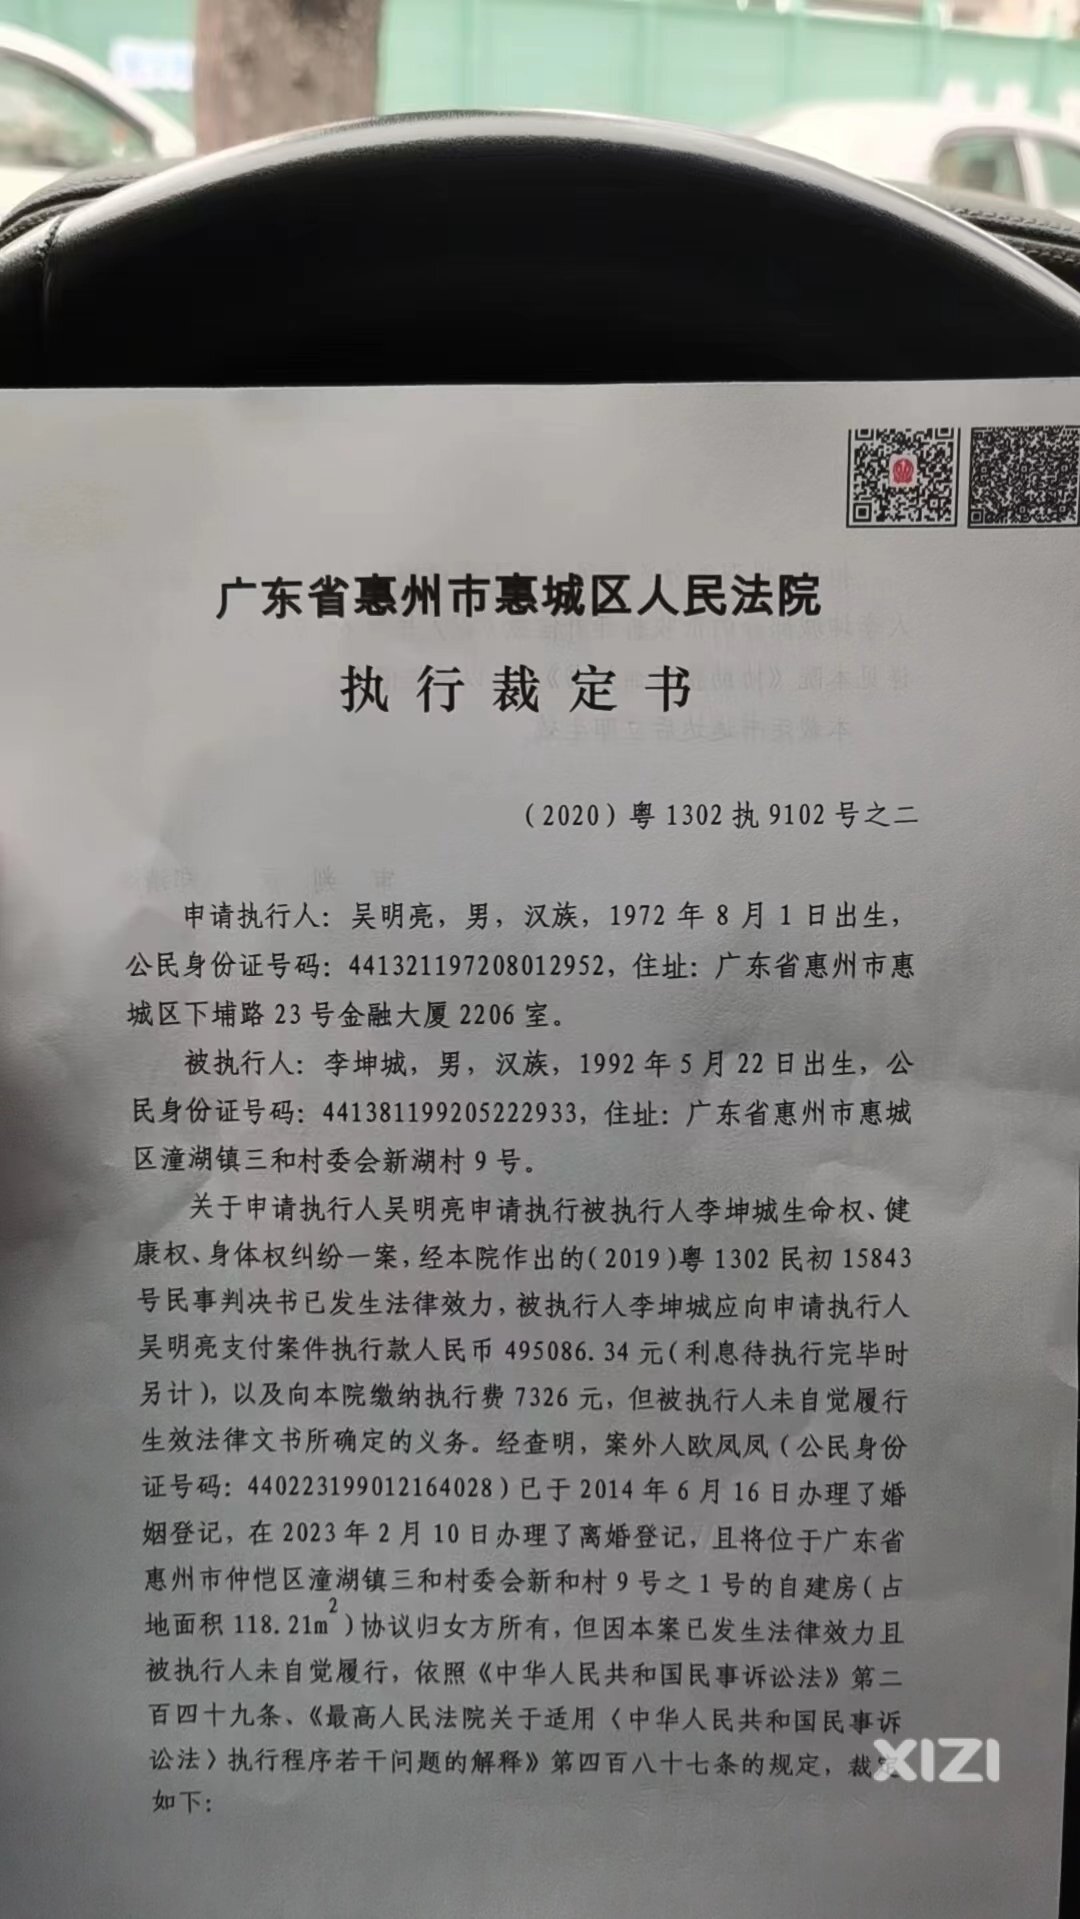 控诉潼湖镇副镇长张盛宇拒不协助执行法院生效裁定